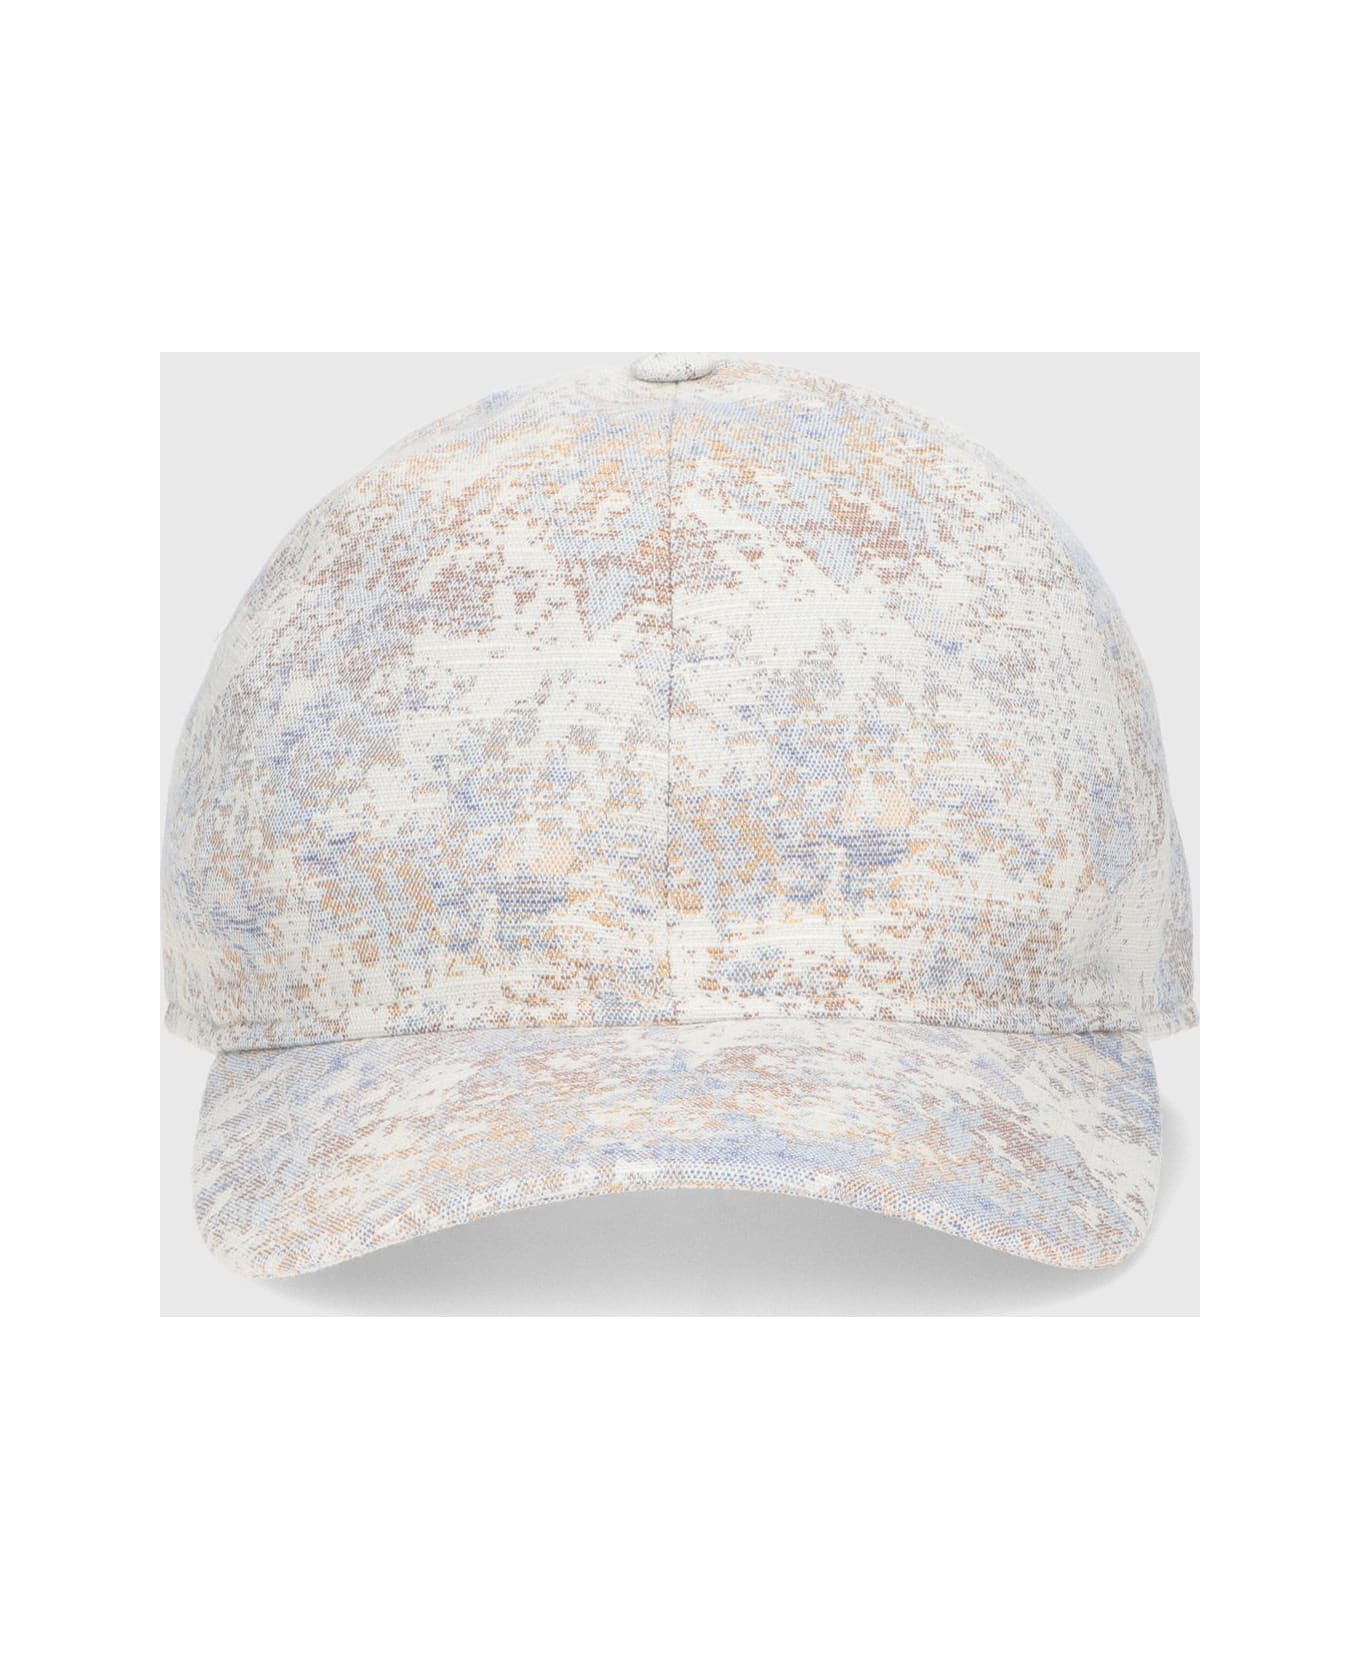 Borsalino Hiker Baseball Cap - MARBLE 帽子